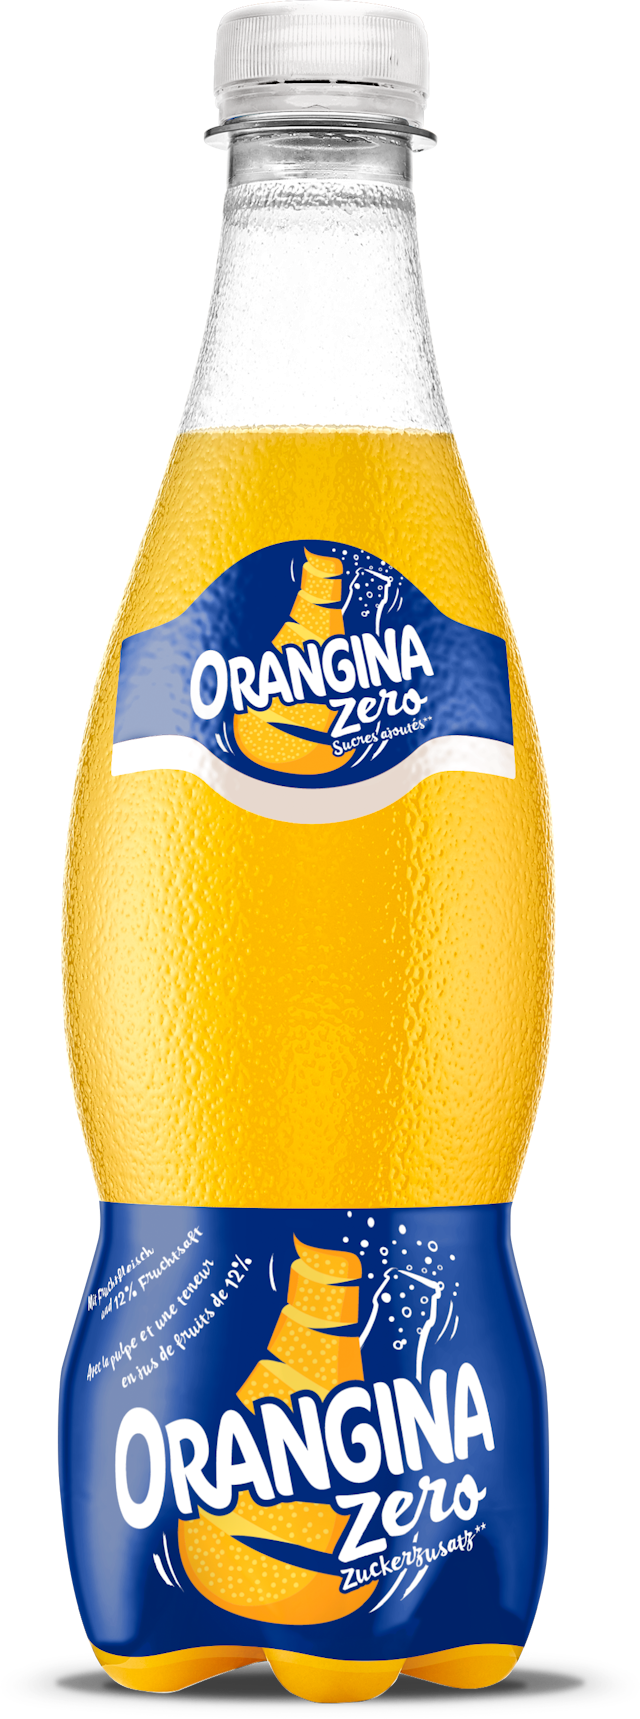 bottle of Orangina exploding